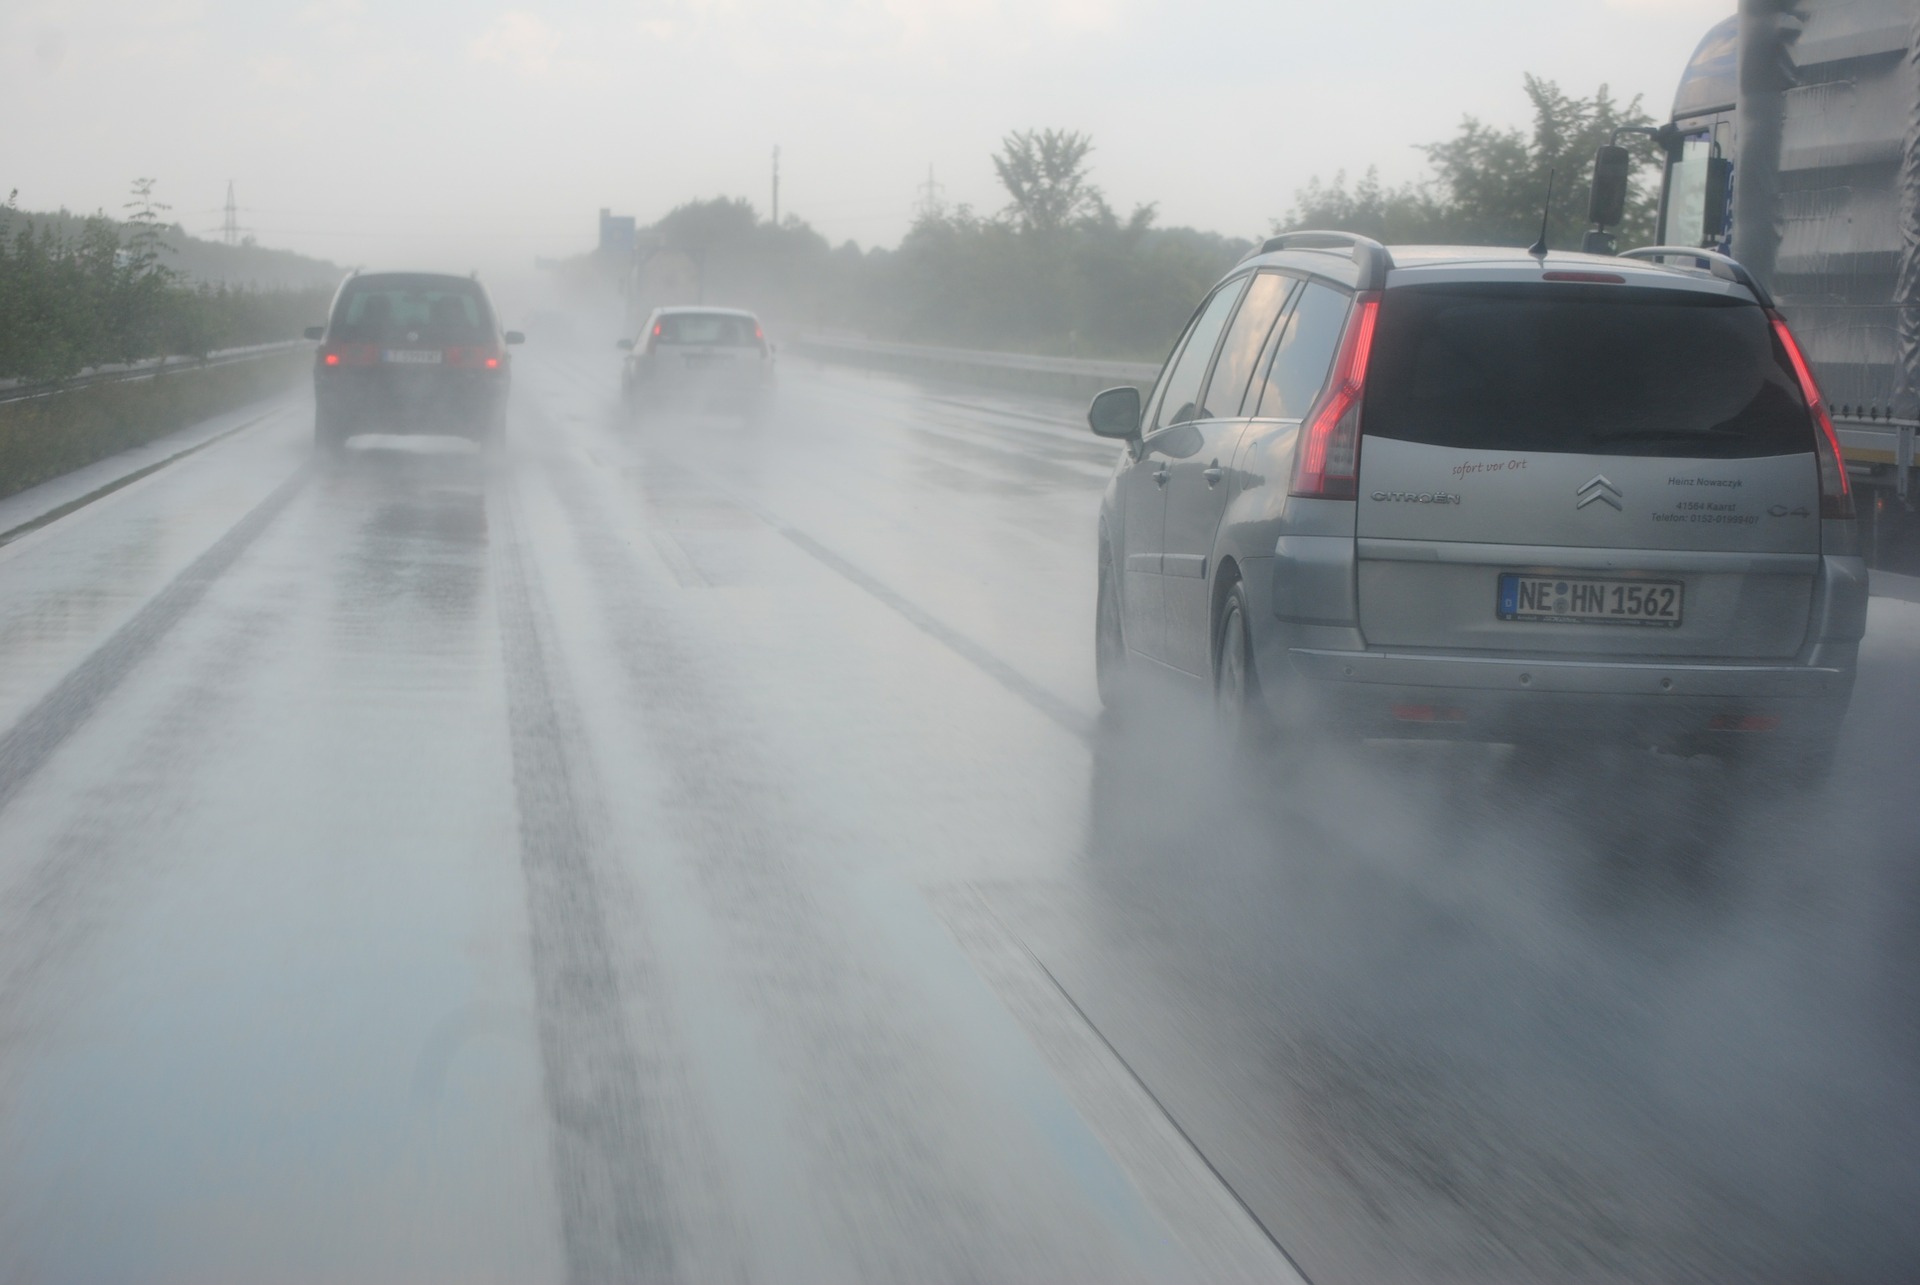 Foto de carros em uma estrada durante a chuva. Imagem ilustrativa para o texto remover chuva ácida do vidro.